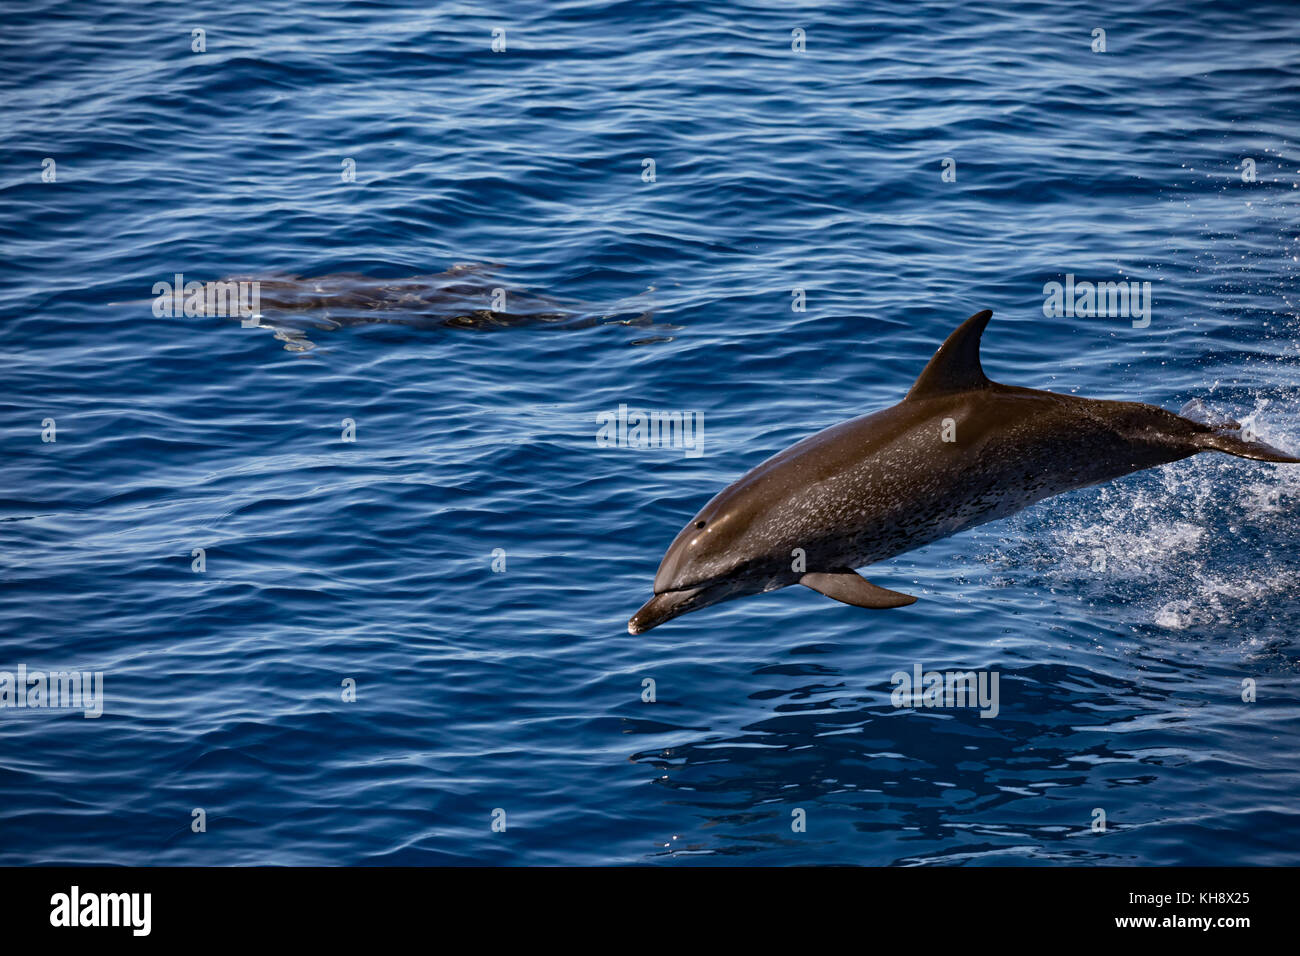 Atlantic delfini maculati vieni a cavalcare la prua del National Geographic Orion vetroso in acqua chiara nel mezzo dell'Oceano Atlantico Foto Stock